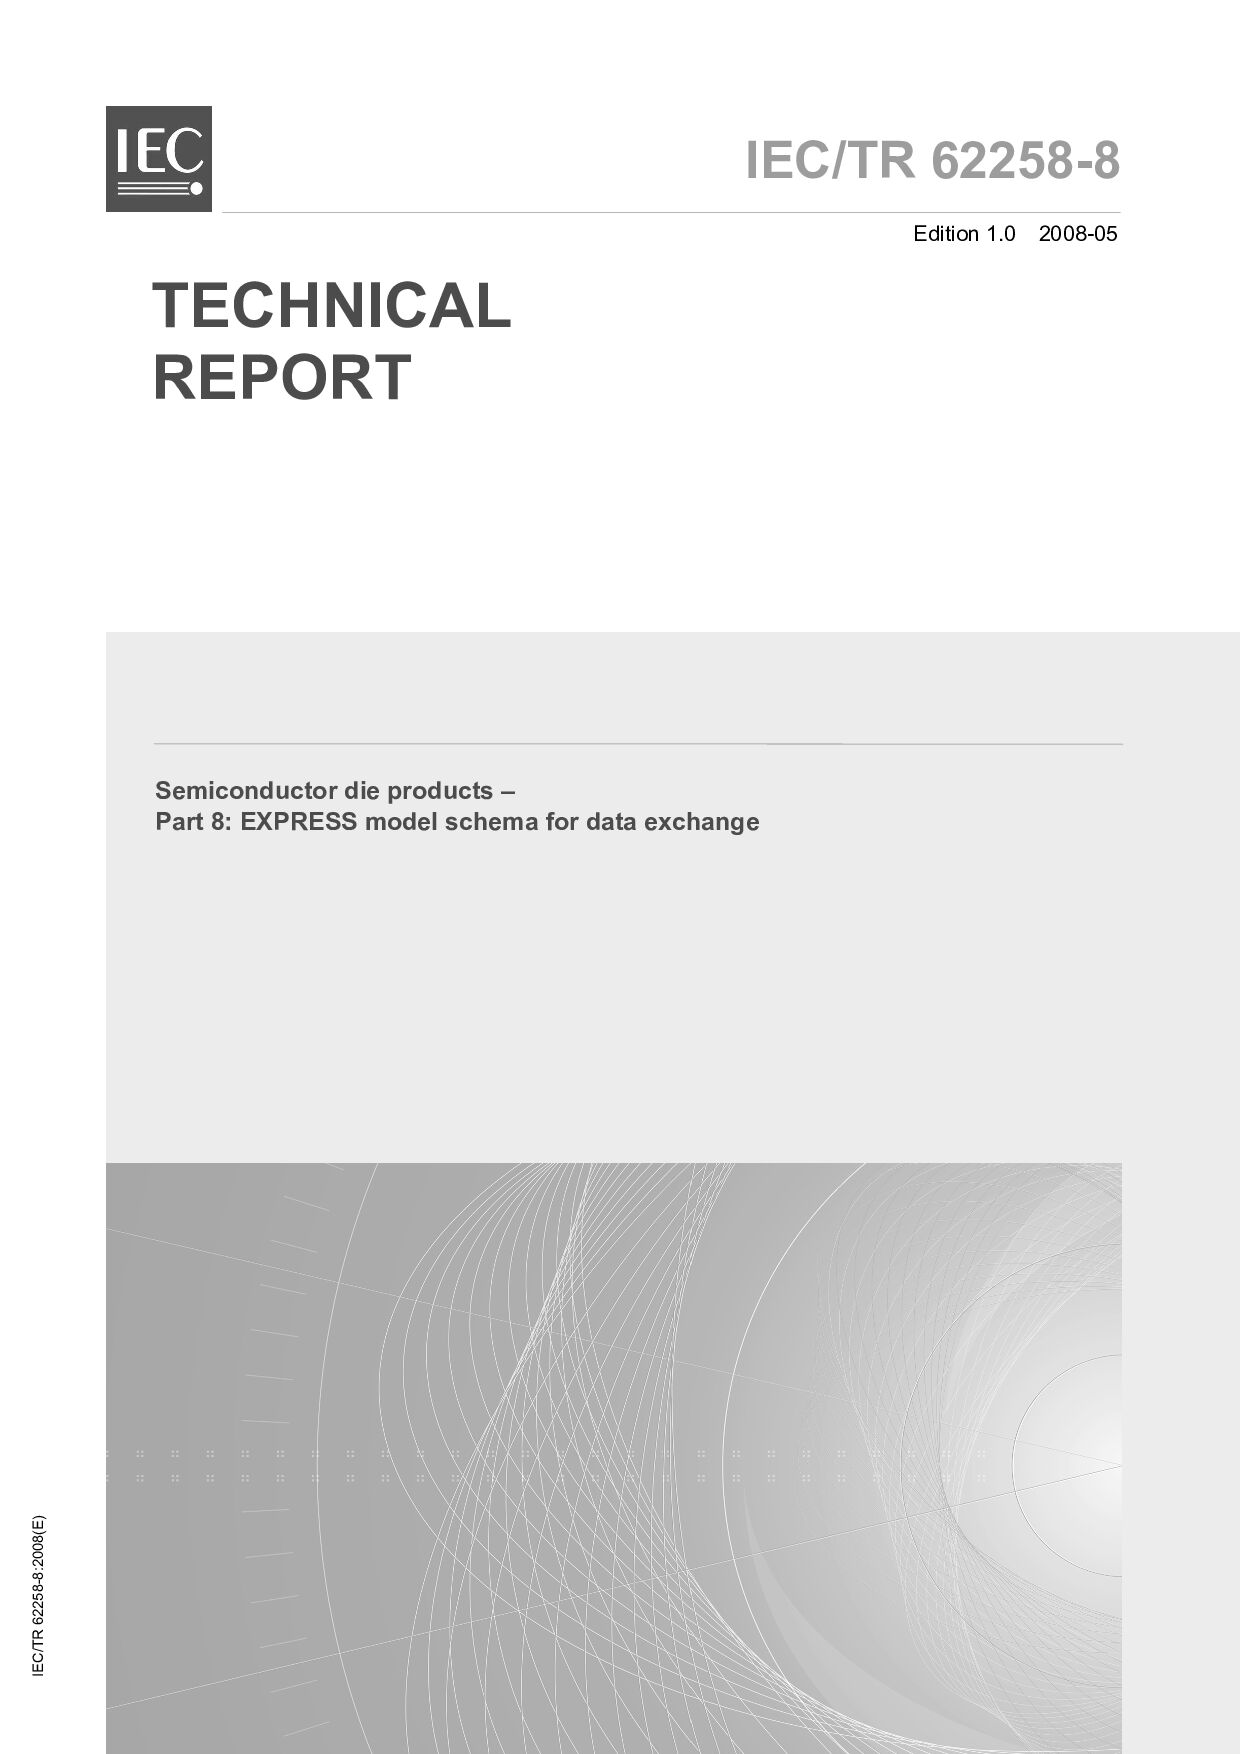 IEC TR 62258-8:2008